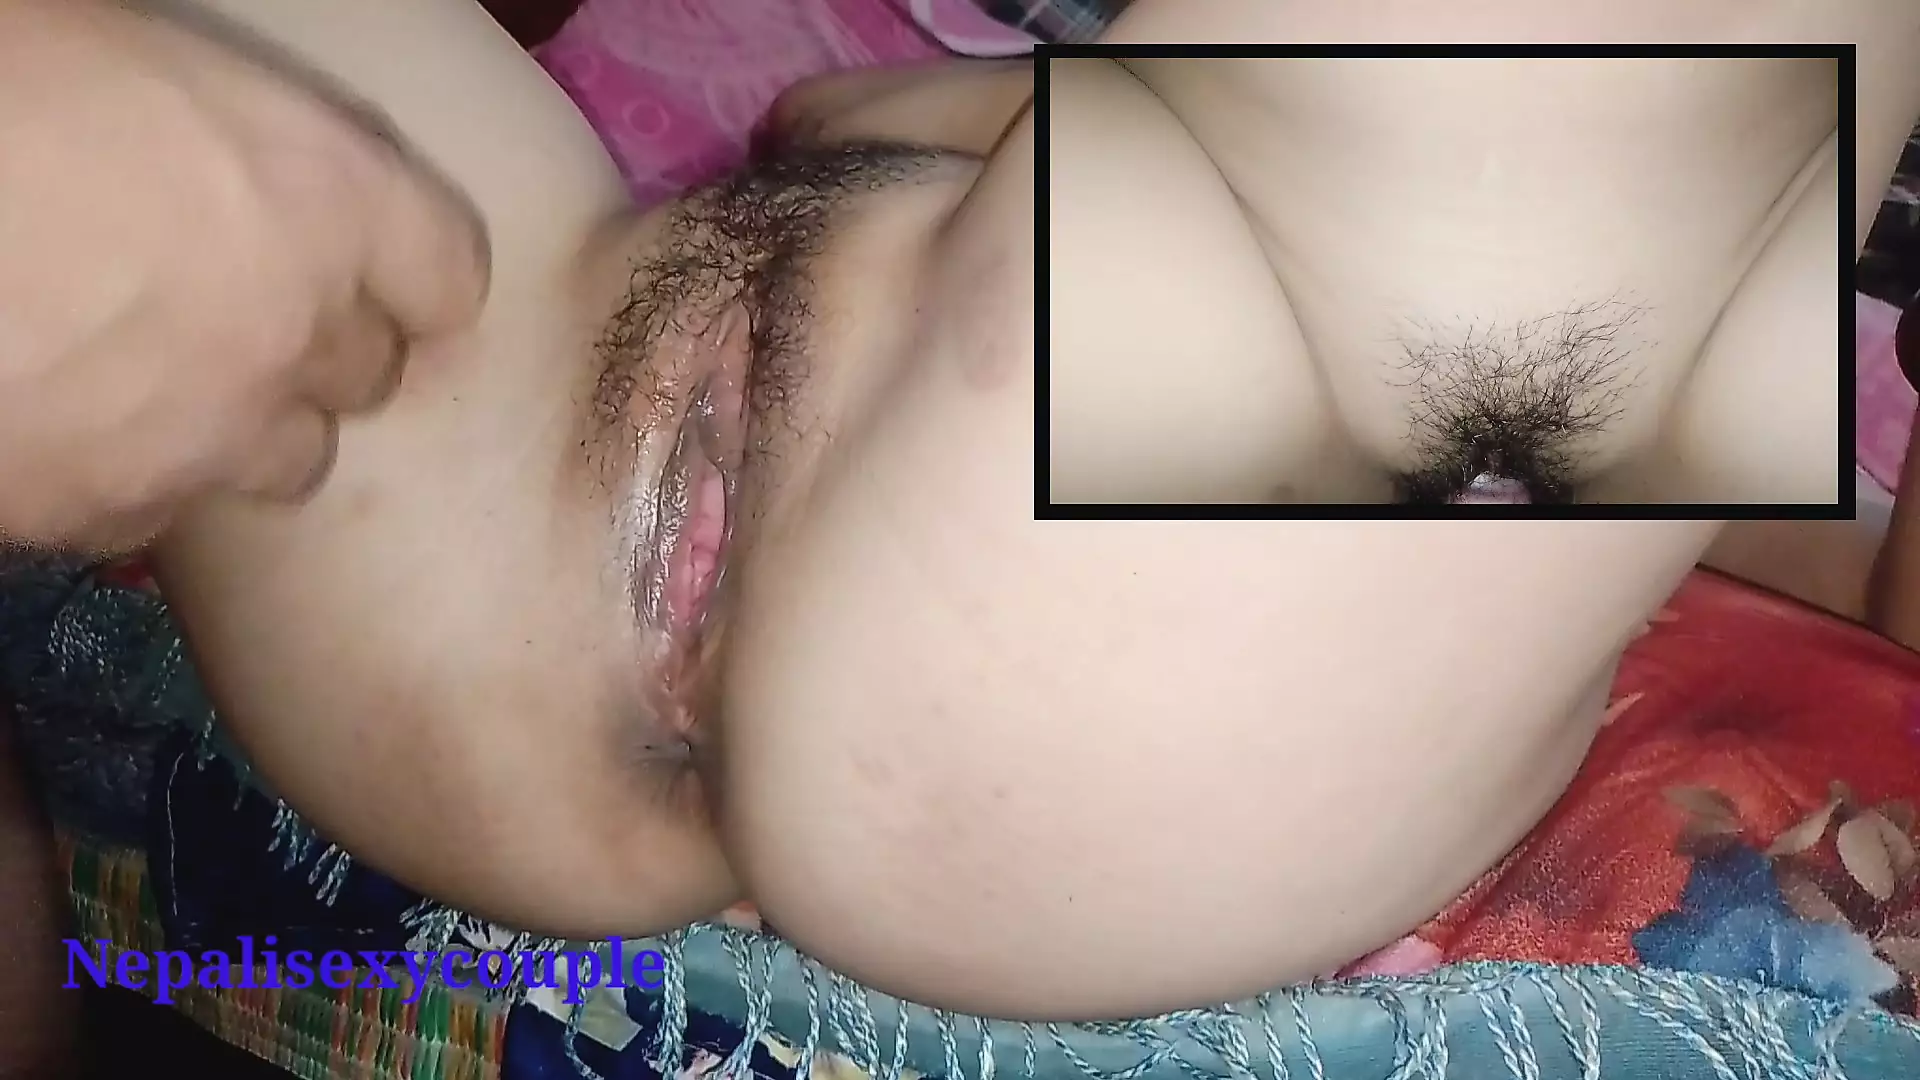 beatriz murillo recommends Nepali Hot Sex Video